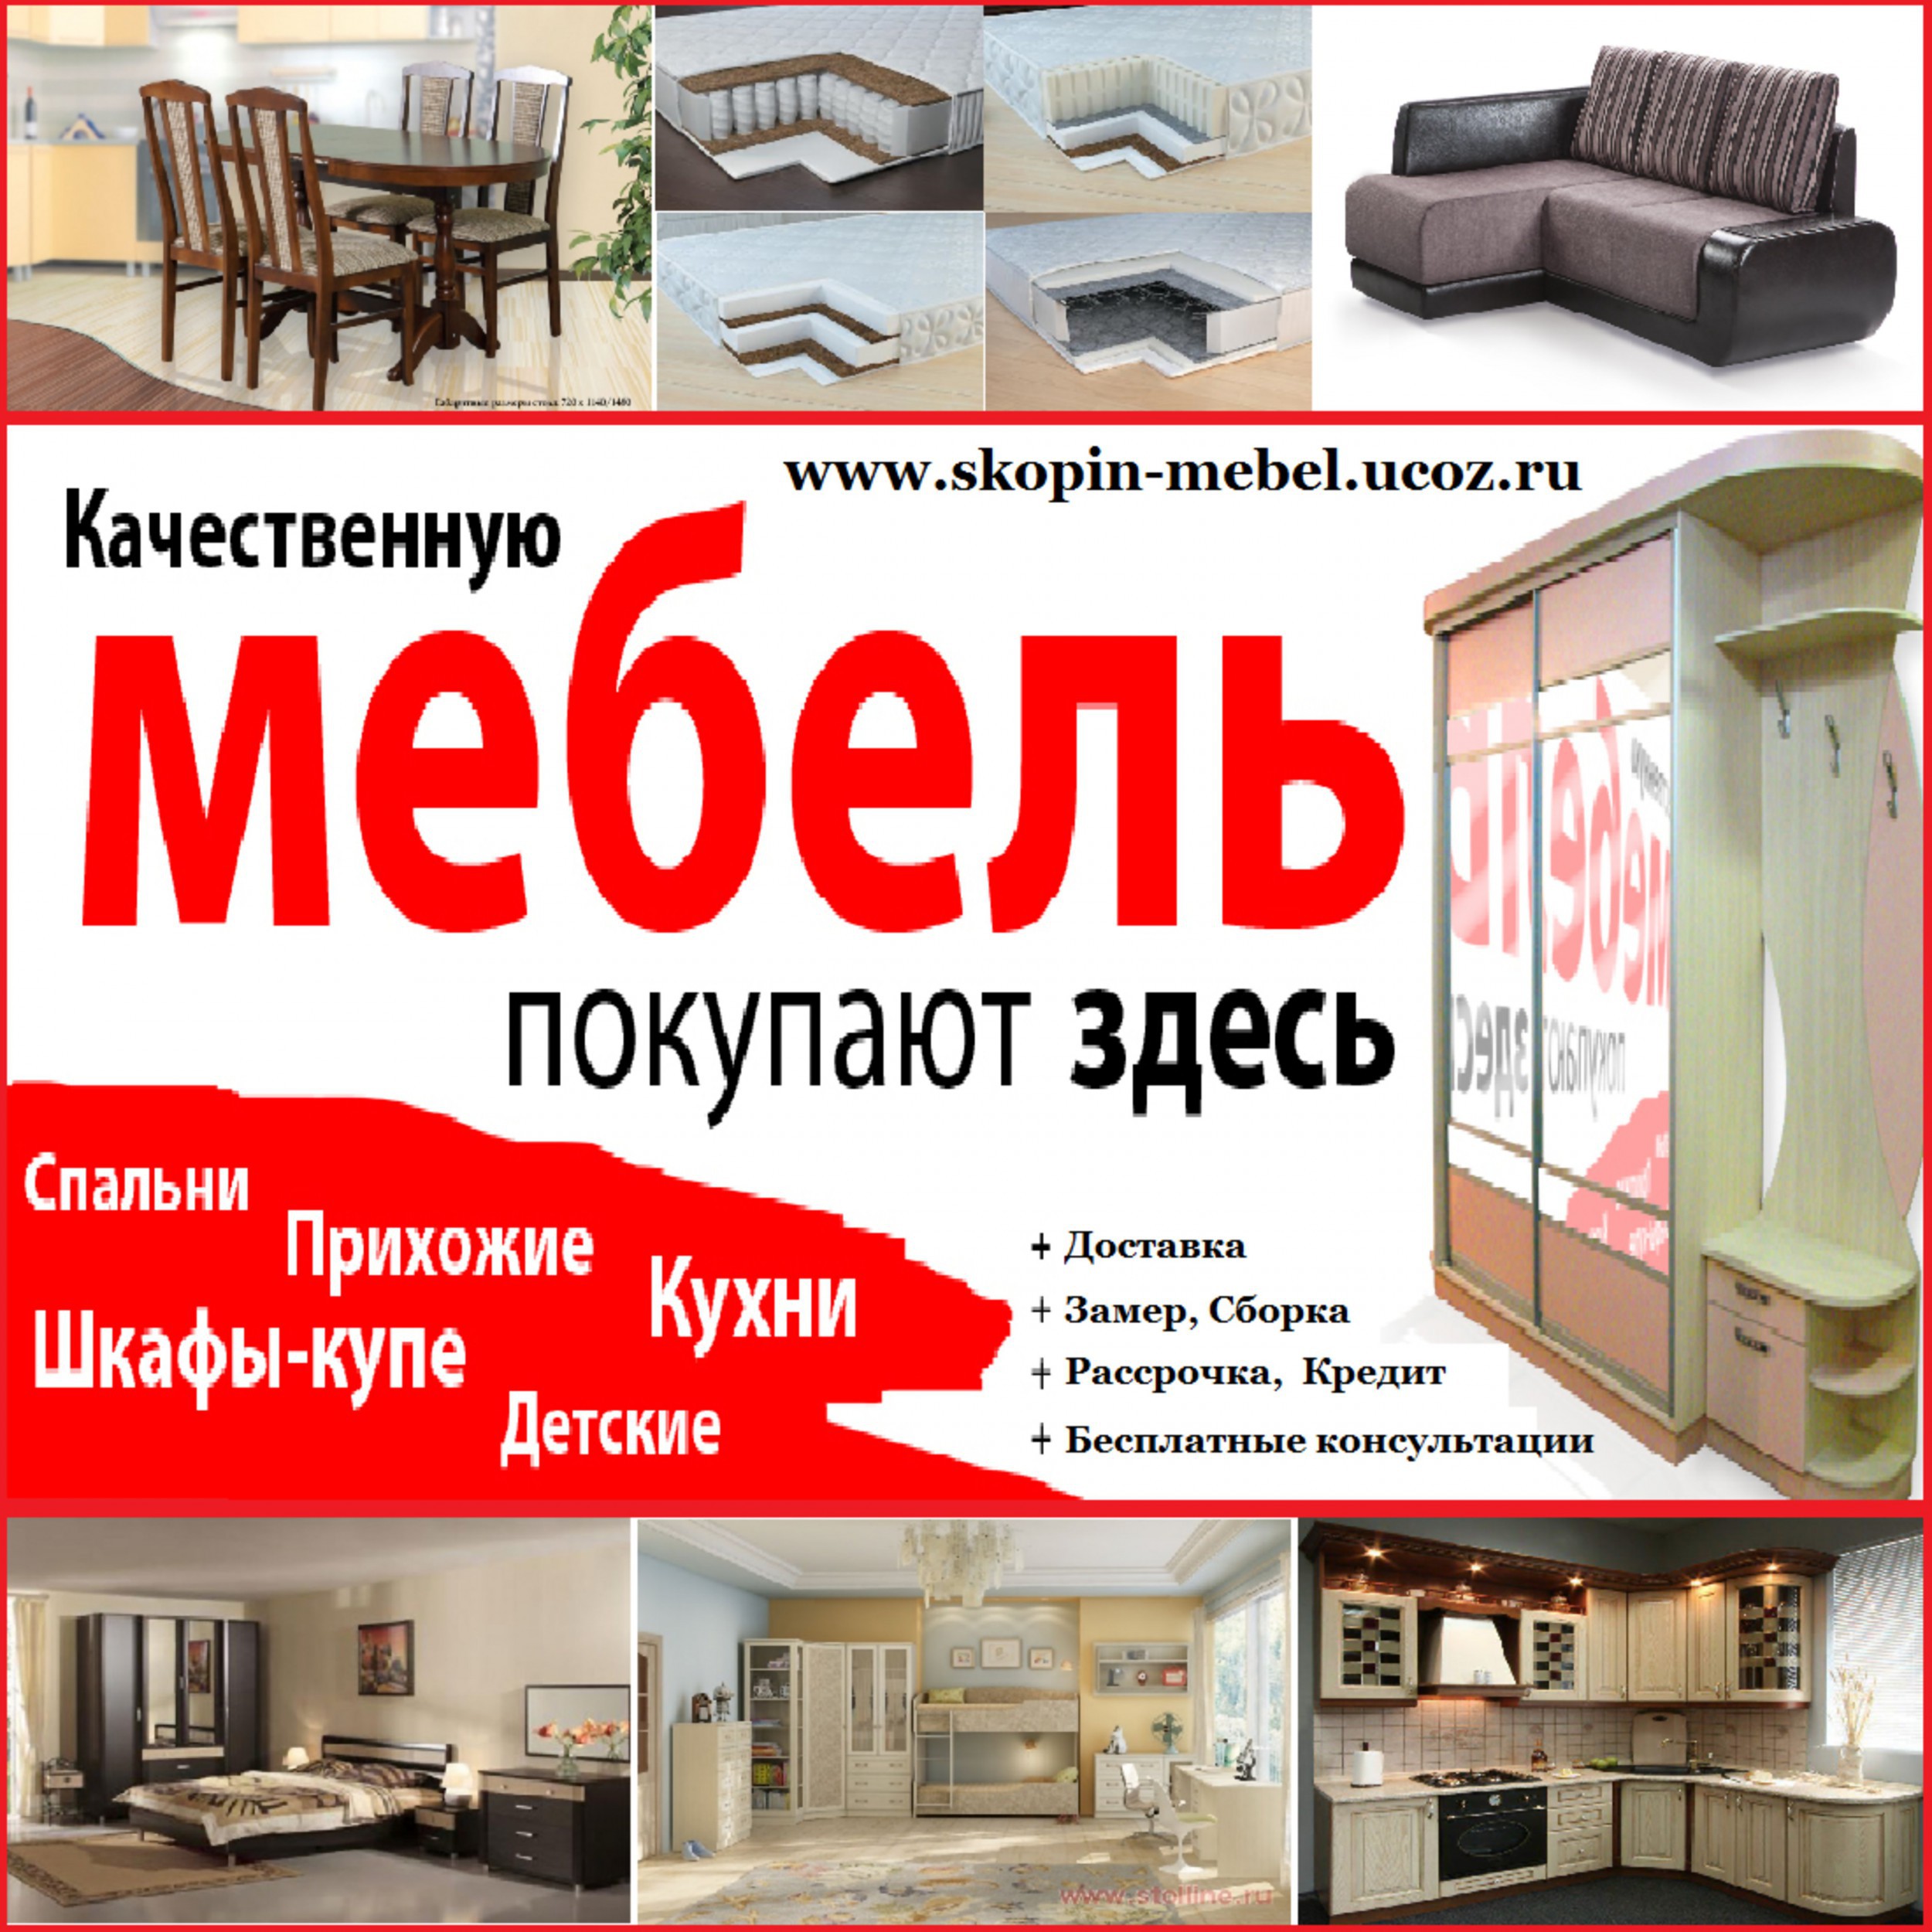 реклама мебели в интернете